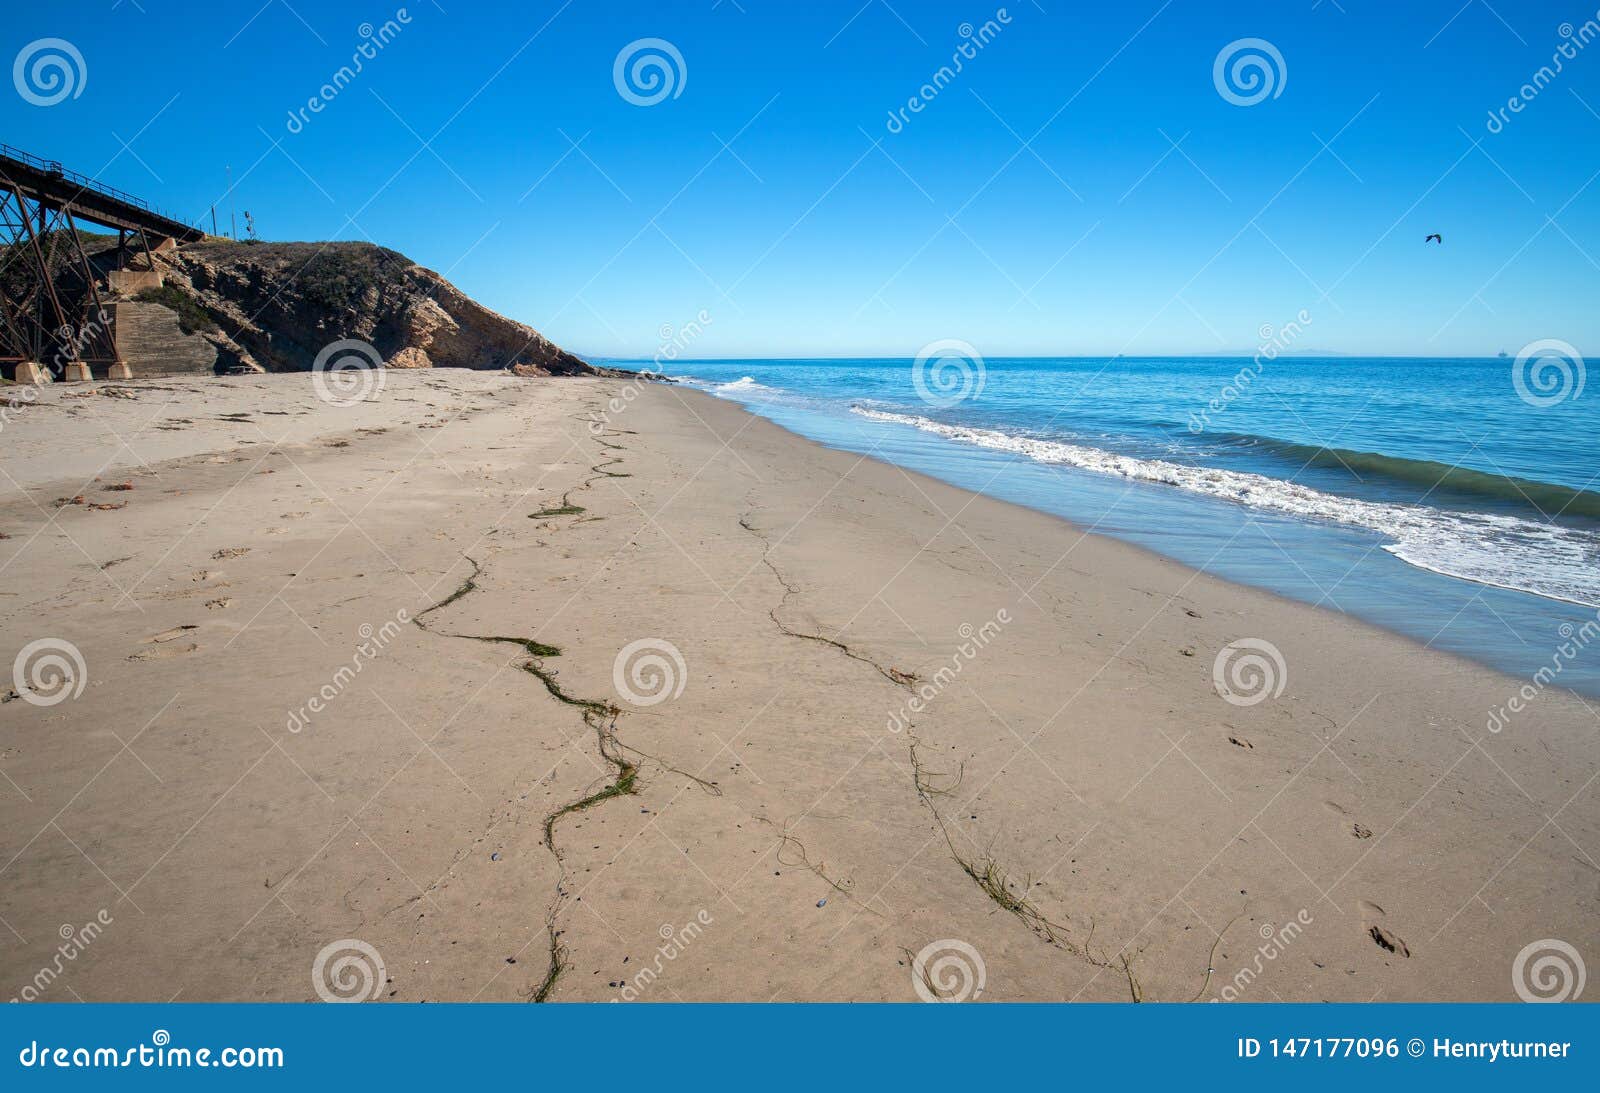 gaviota beach on the central coast of california usa